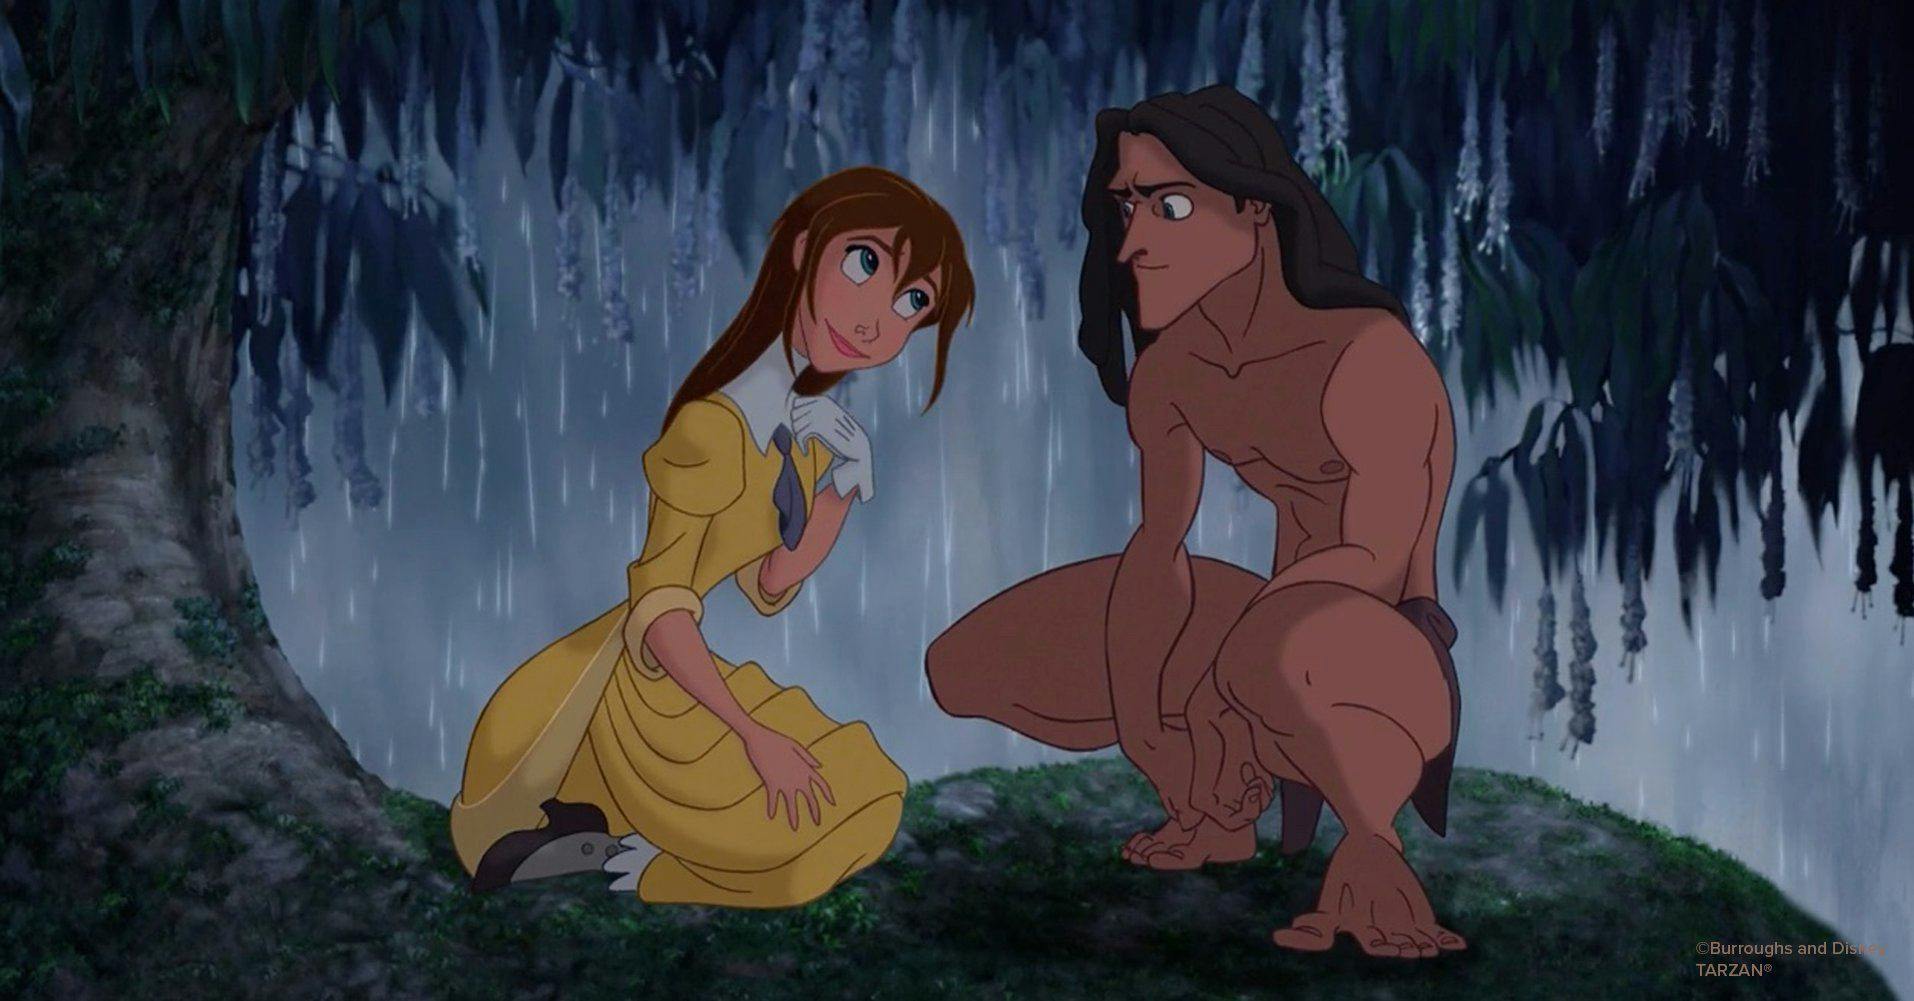 Happy 25th Birthday Tarzan!